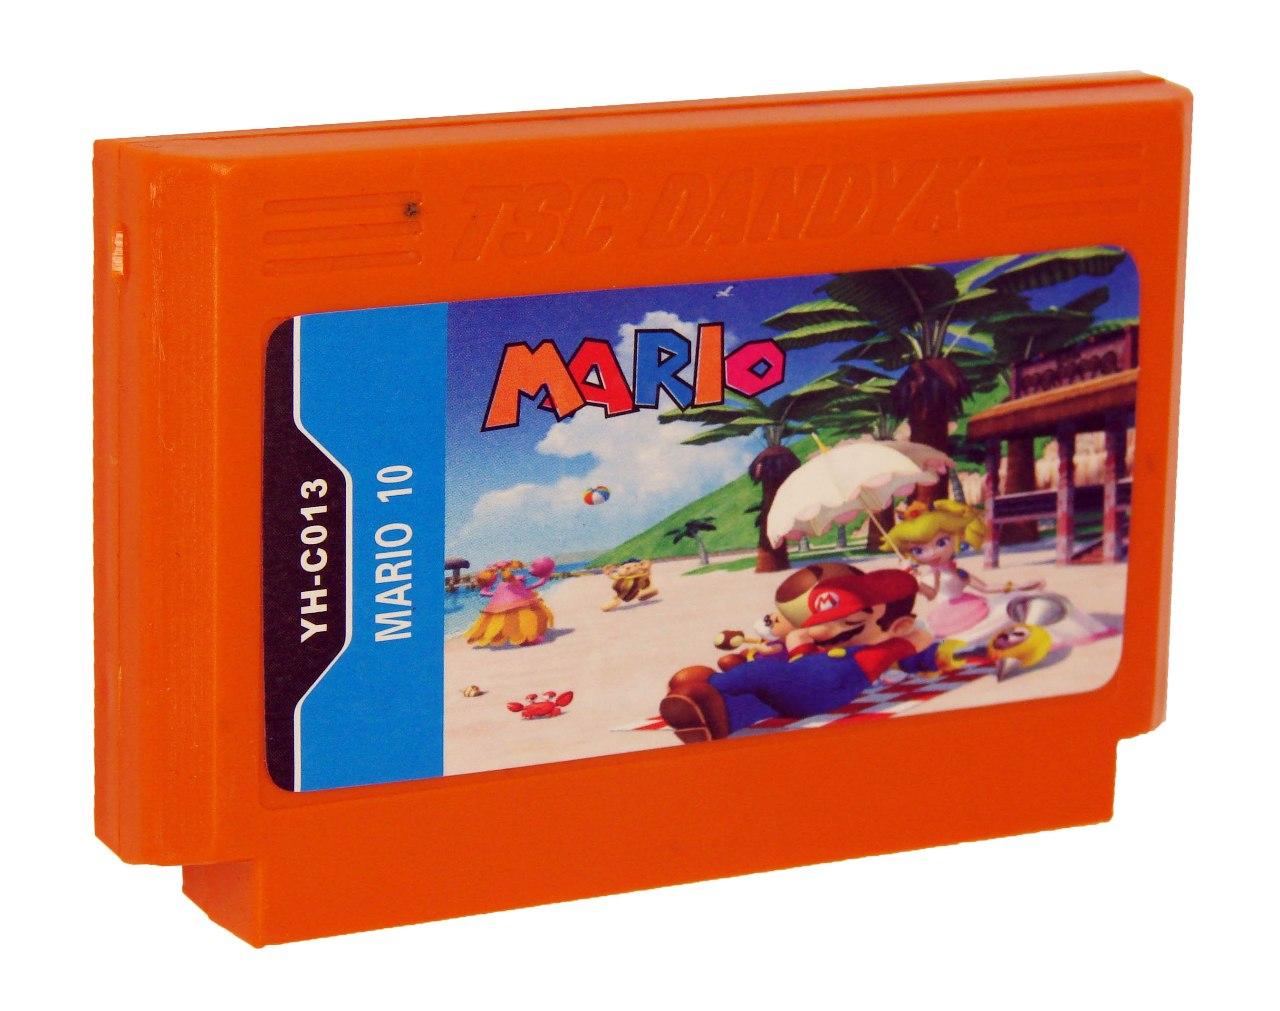    Mario 10 (Dendy)